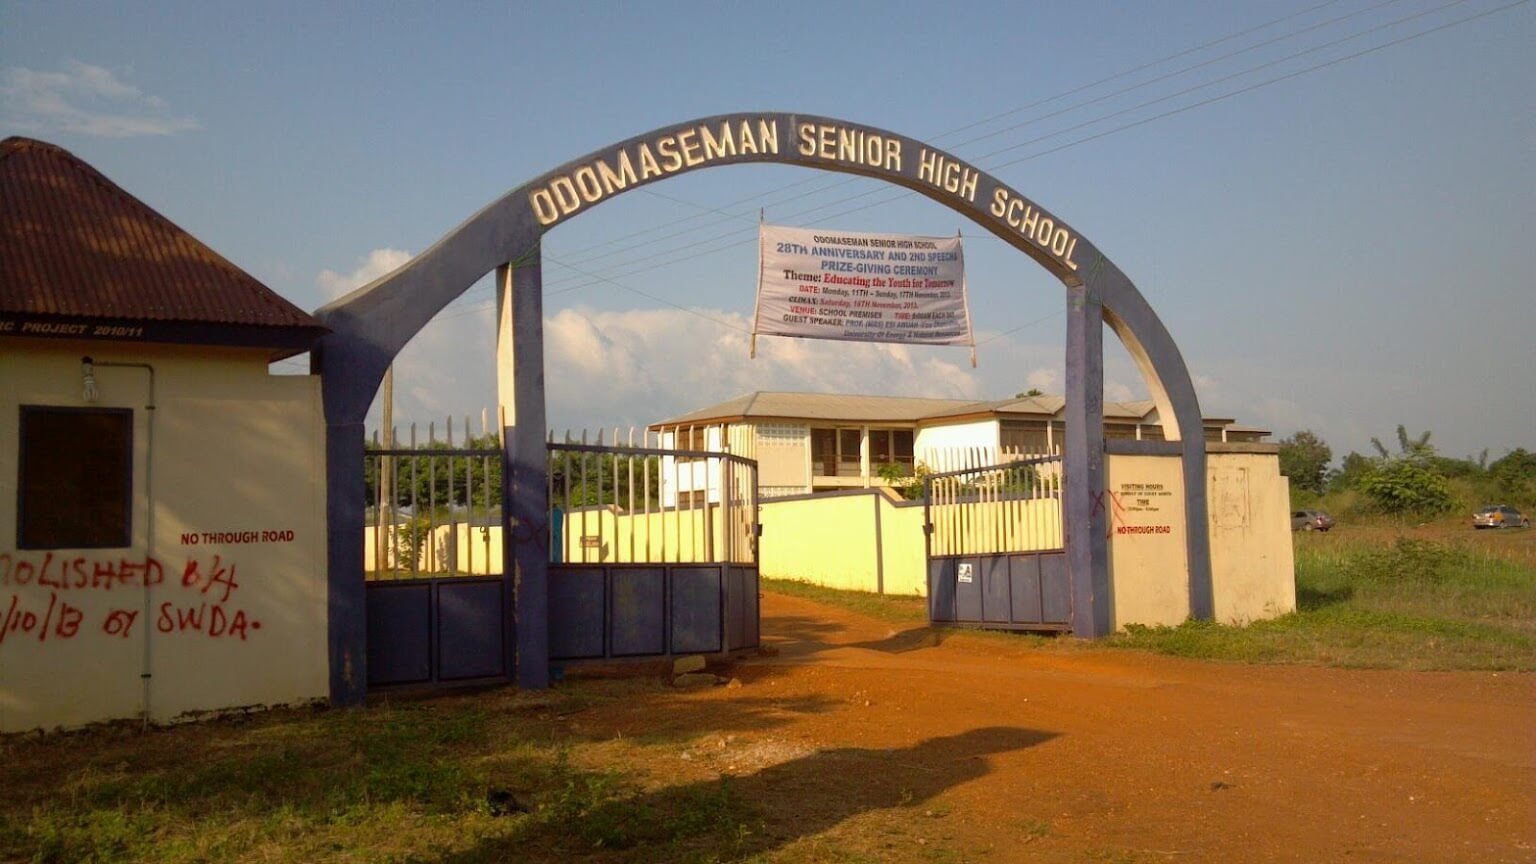 Odomaseman Senior High Entrance